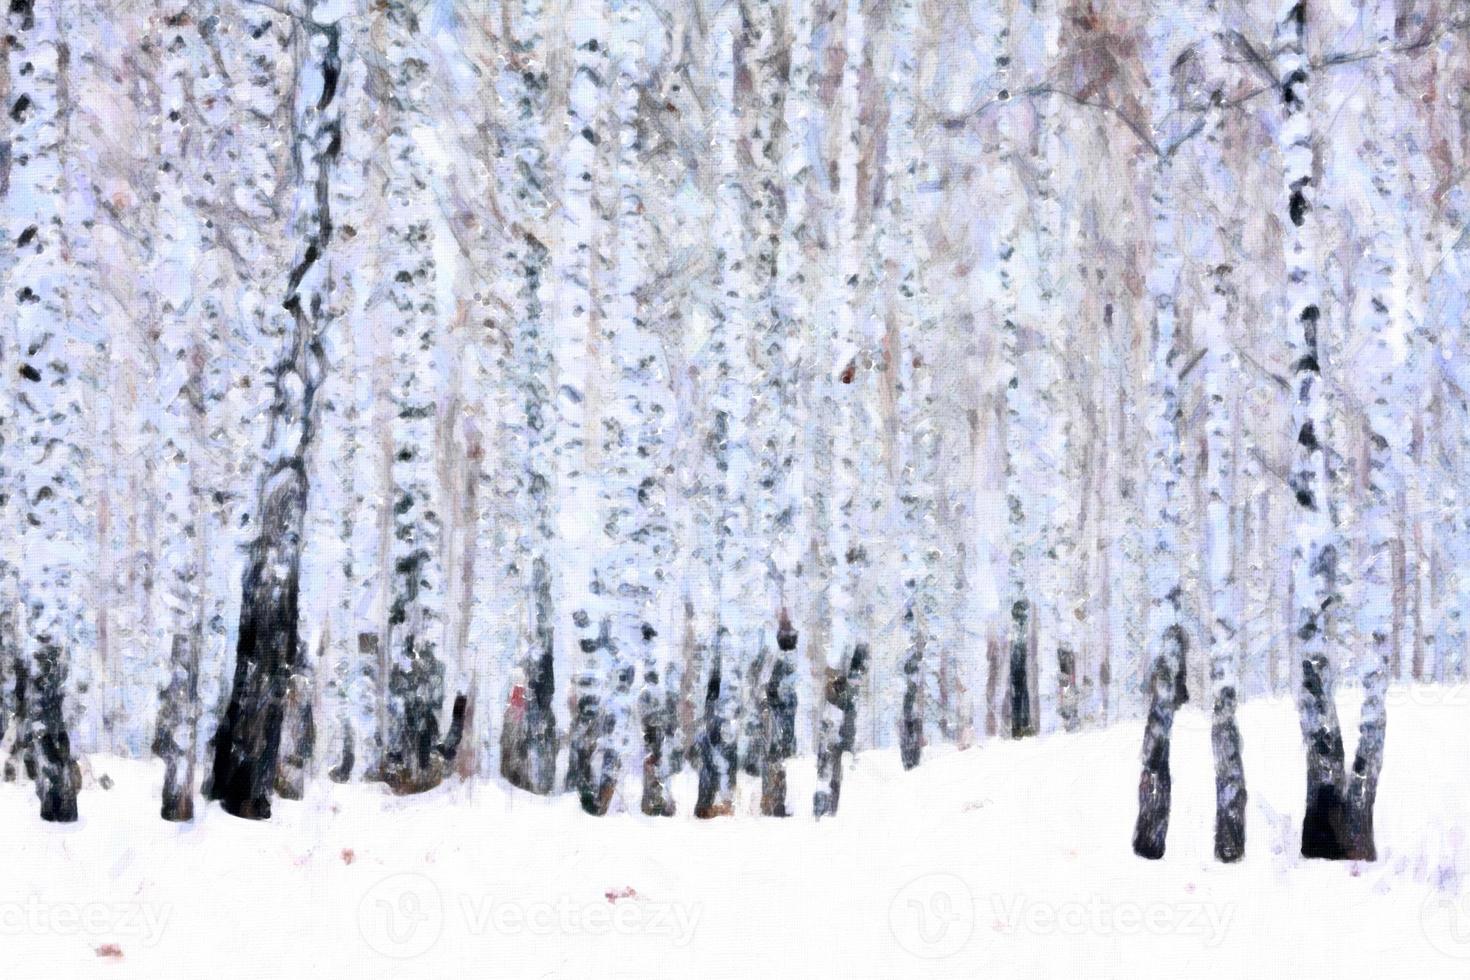 Birch forest in winter, oil paint stylization photo